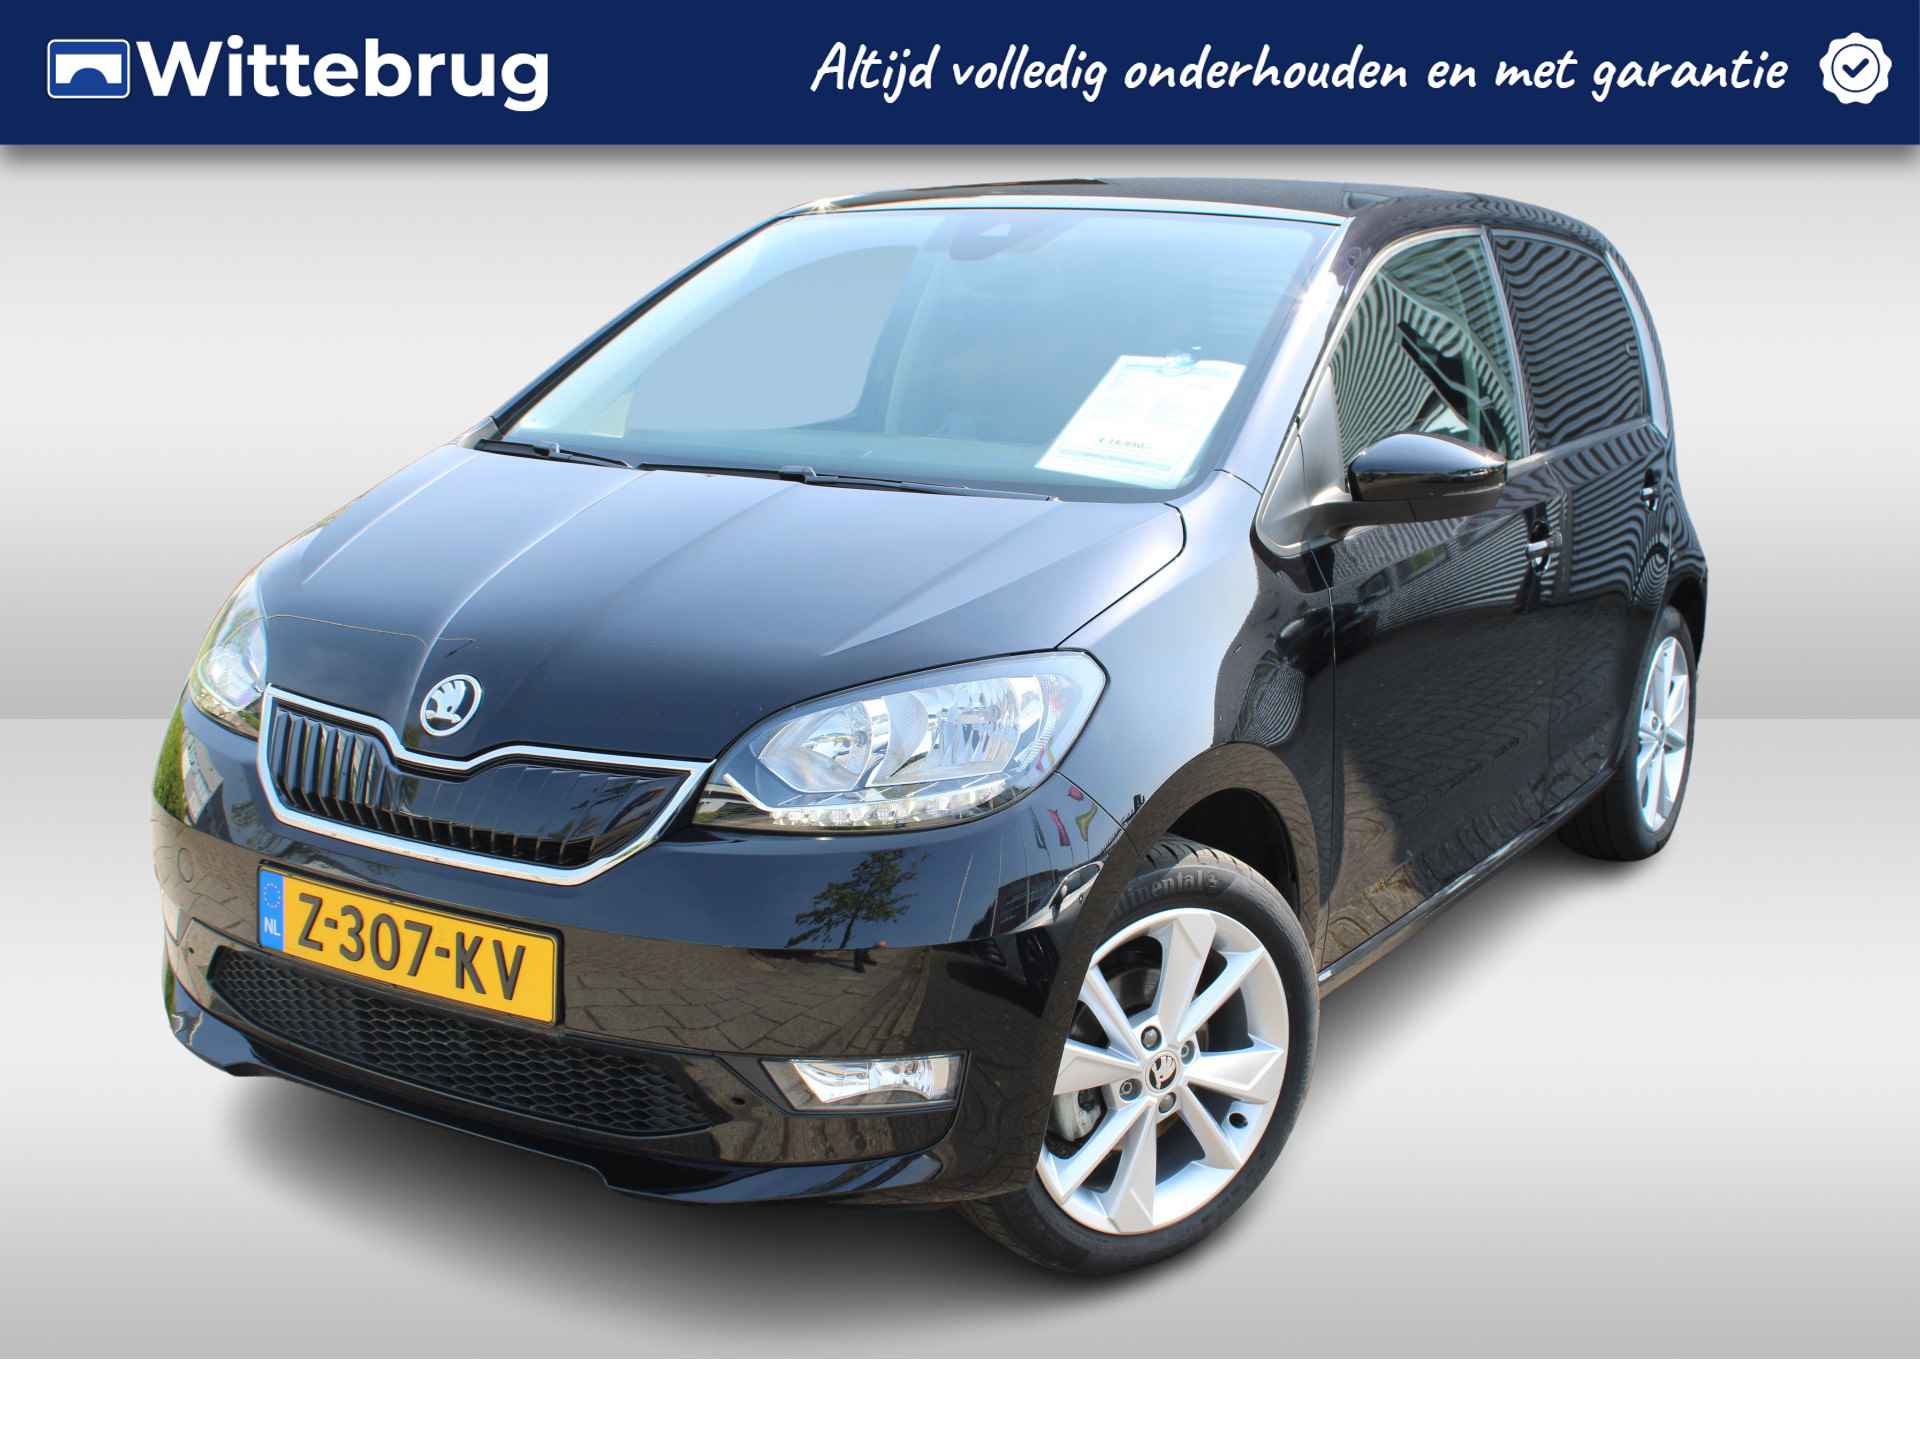 Škoda Citigo e-iV EV Best Of Airco / Navigatie via App / Bluetooth / 16"LM Velgen € 2000,- SEPP Subsidie mogelijk - 1/25